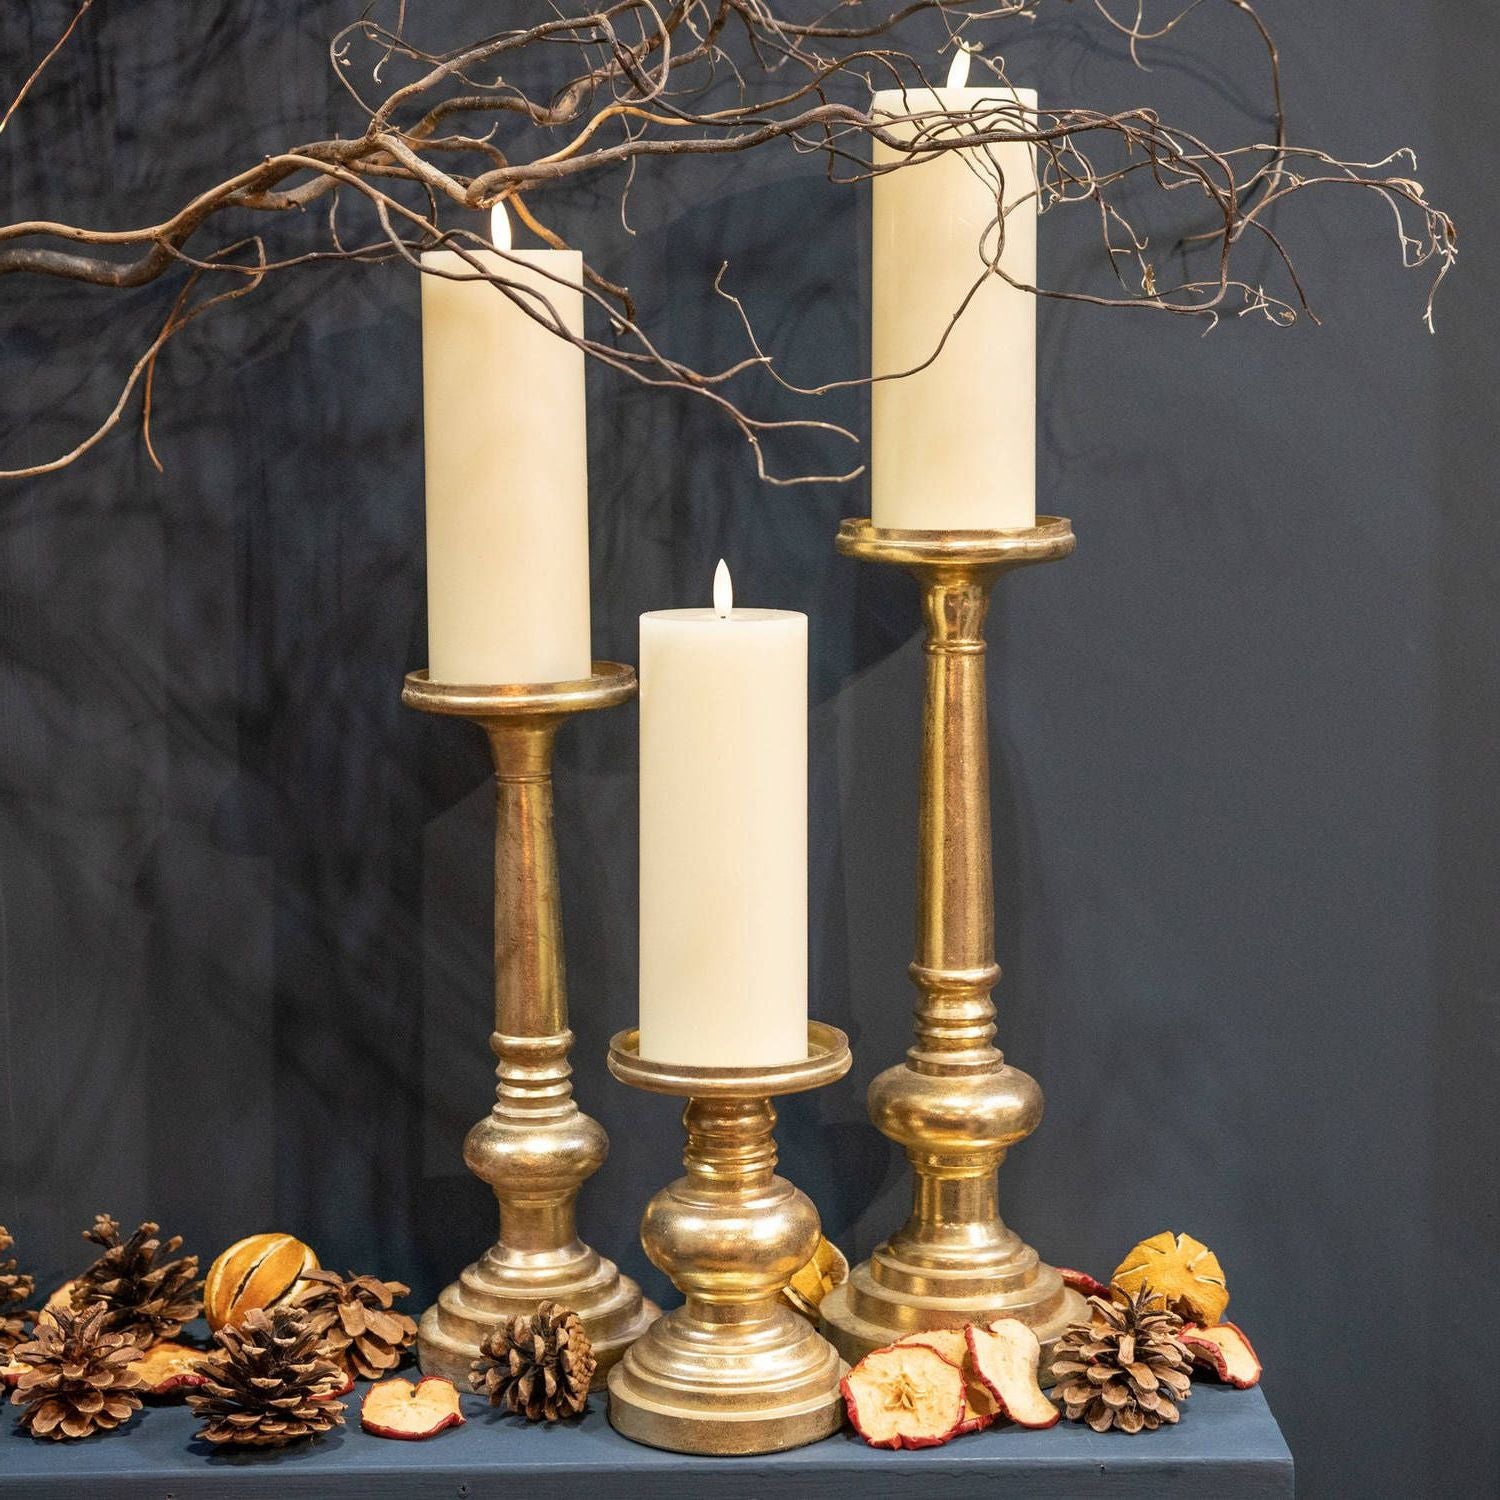 Tall antique brass-effect pillar candlestick - Click Style